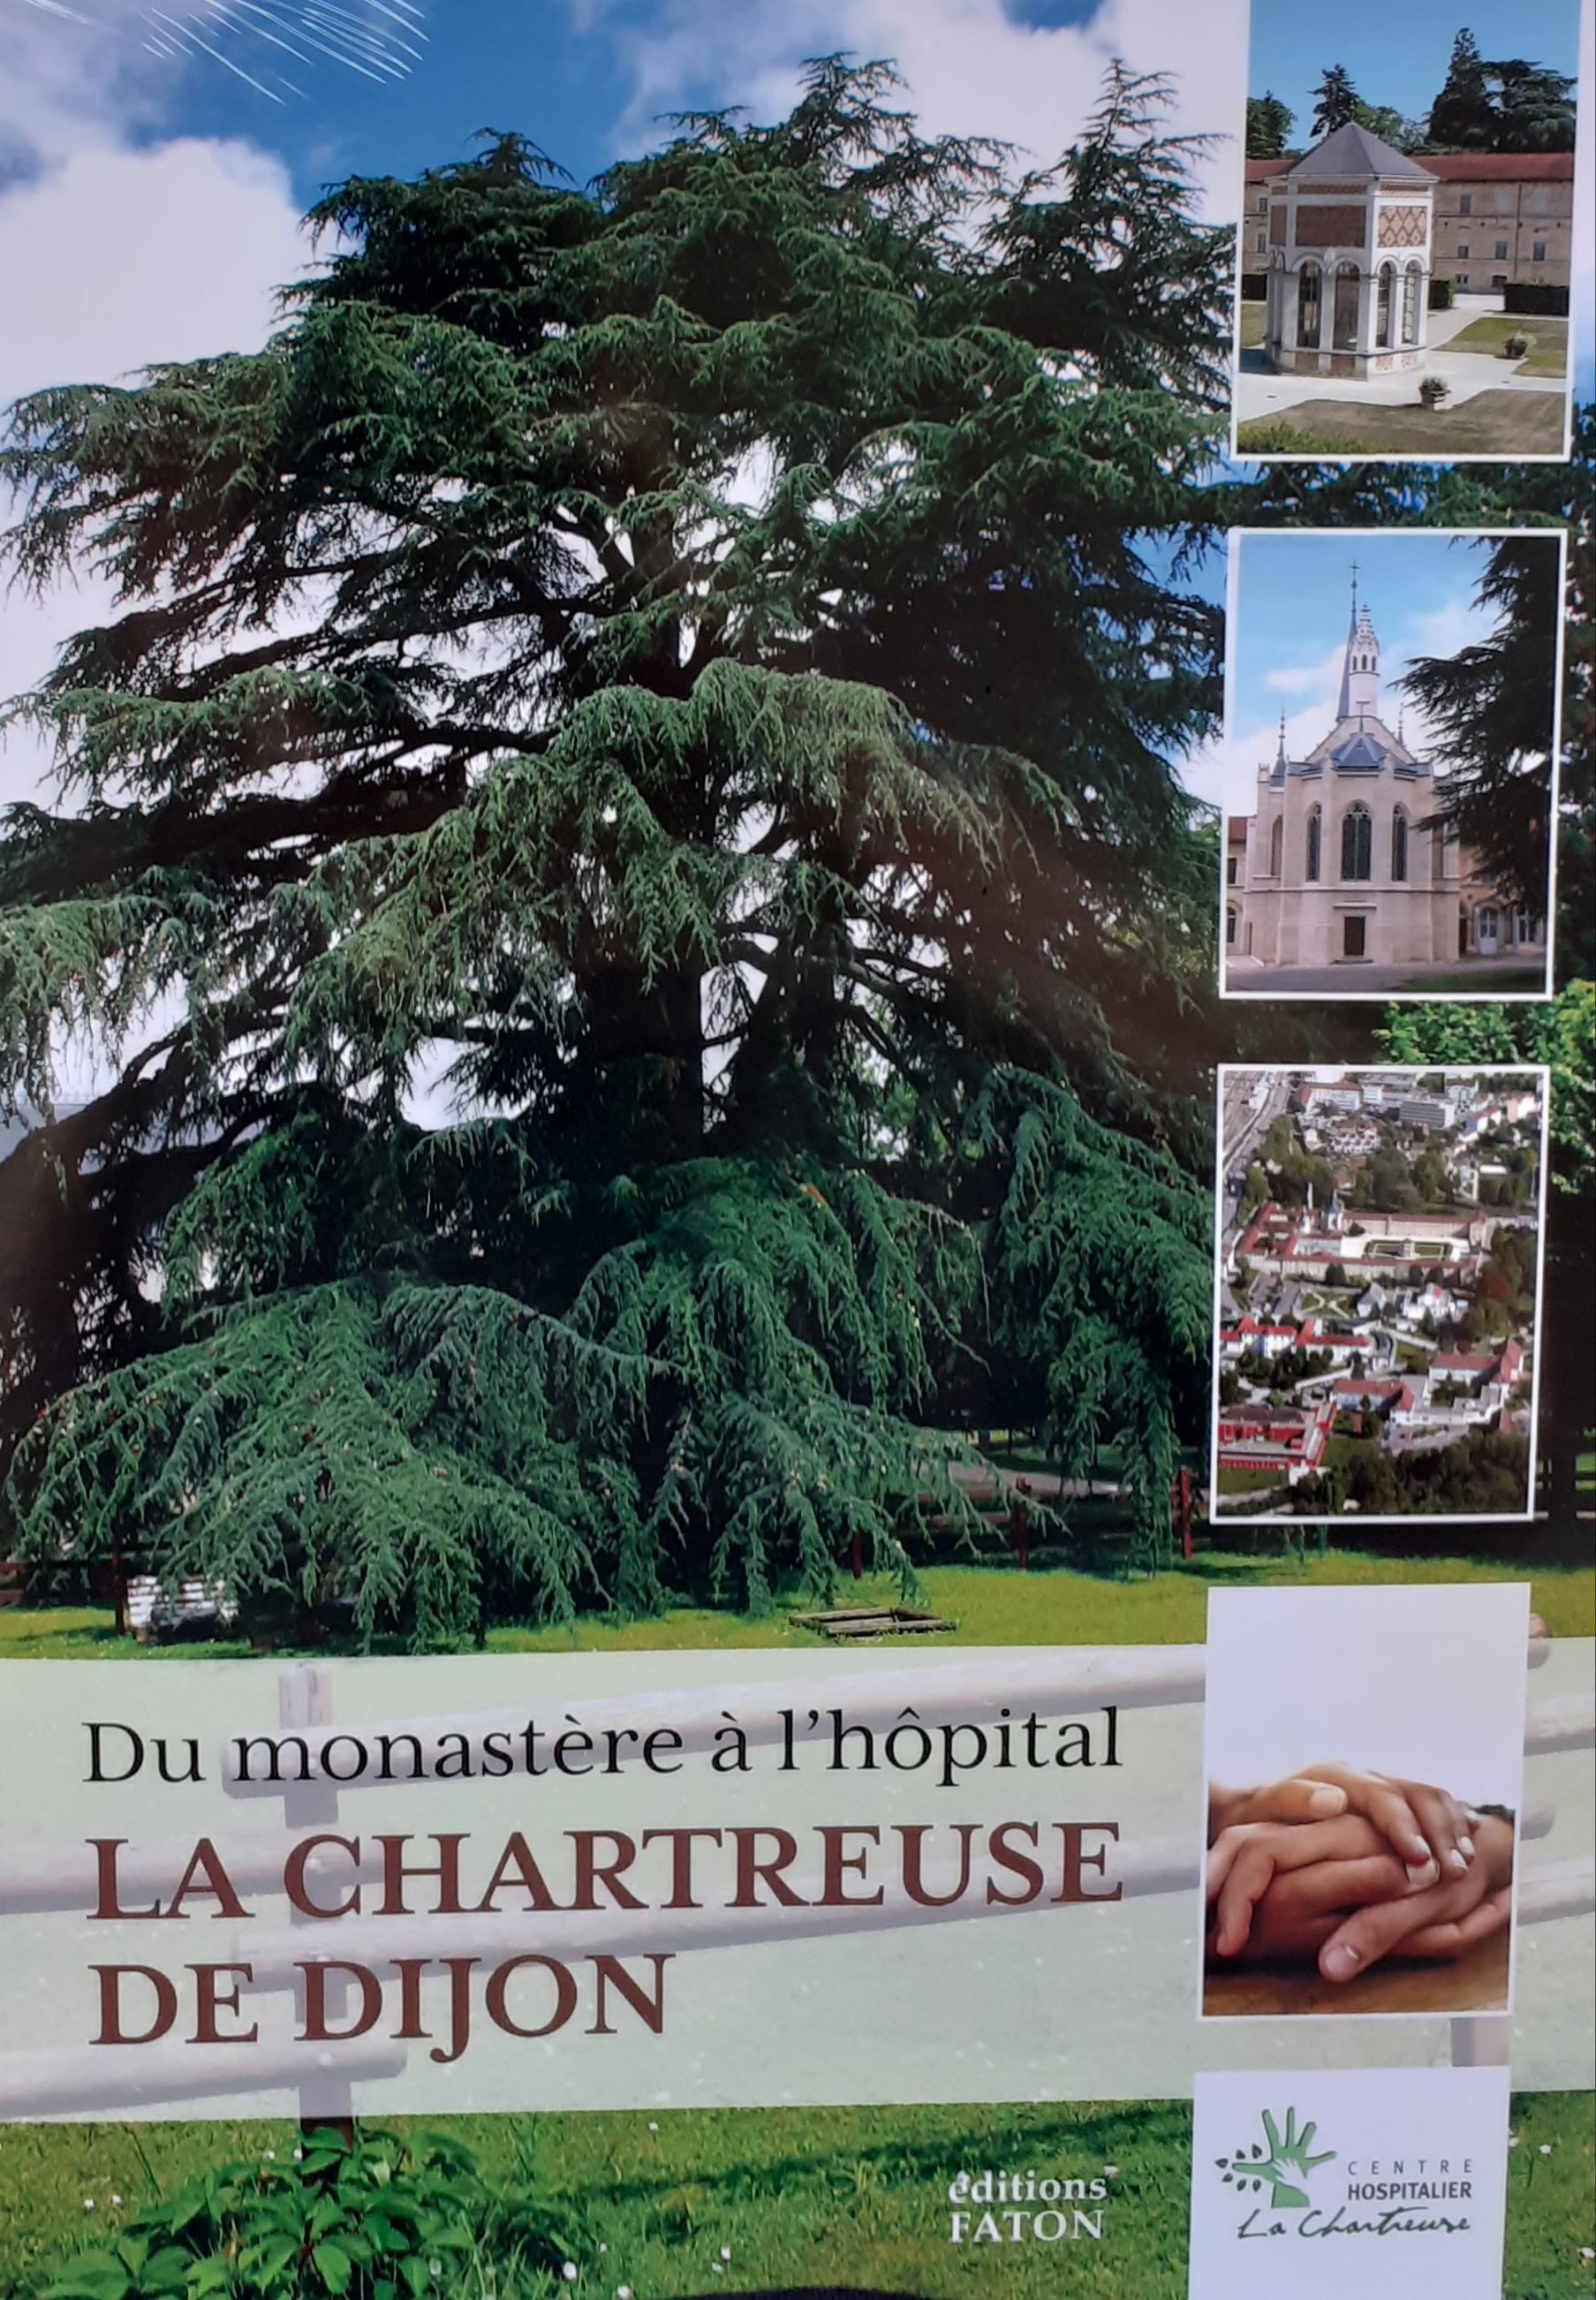 La Chartreuse de Dijon. Du monastère à l'hôpital, 2021, 224 p.